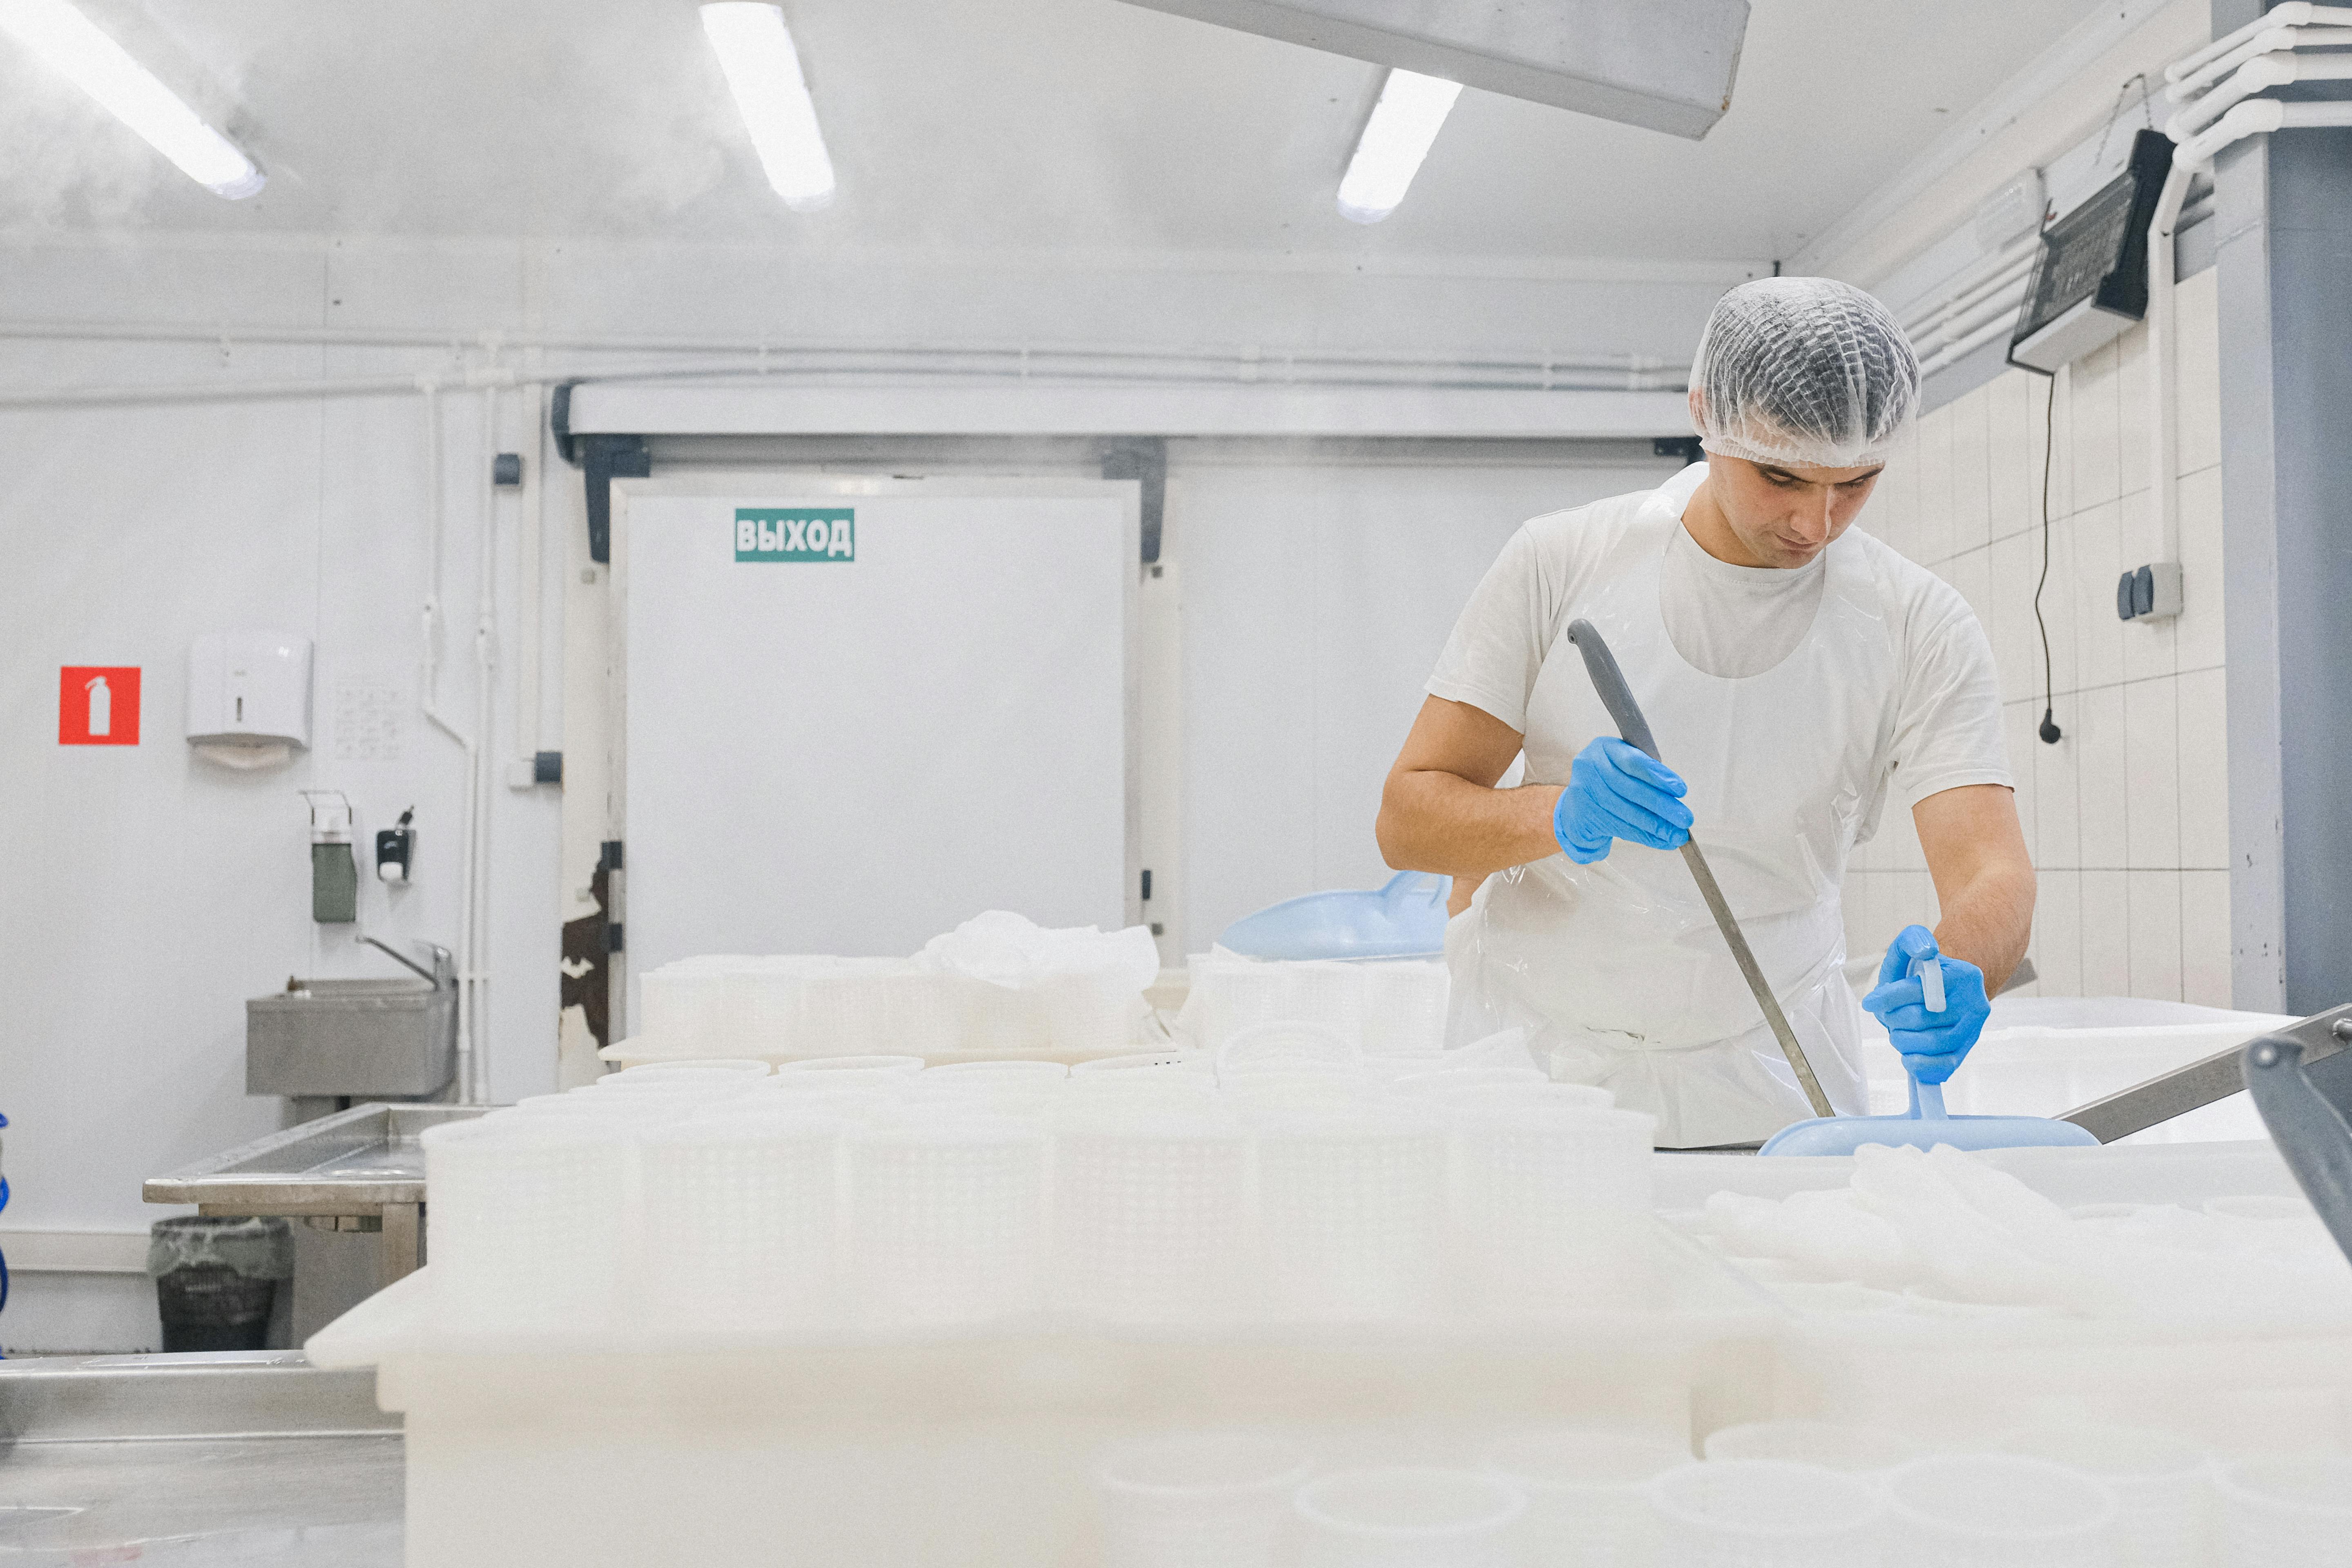 Un homme travaillant dans une fromagerie | Source : Pexels